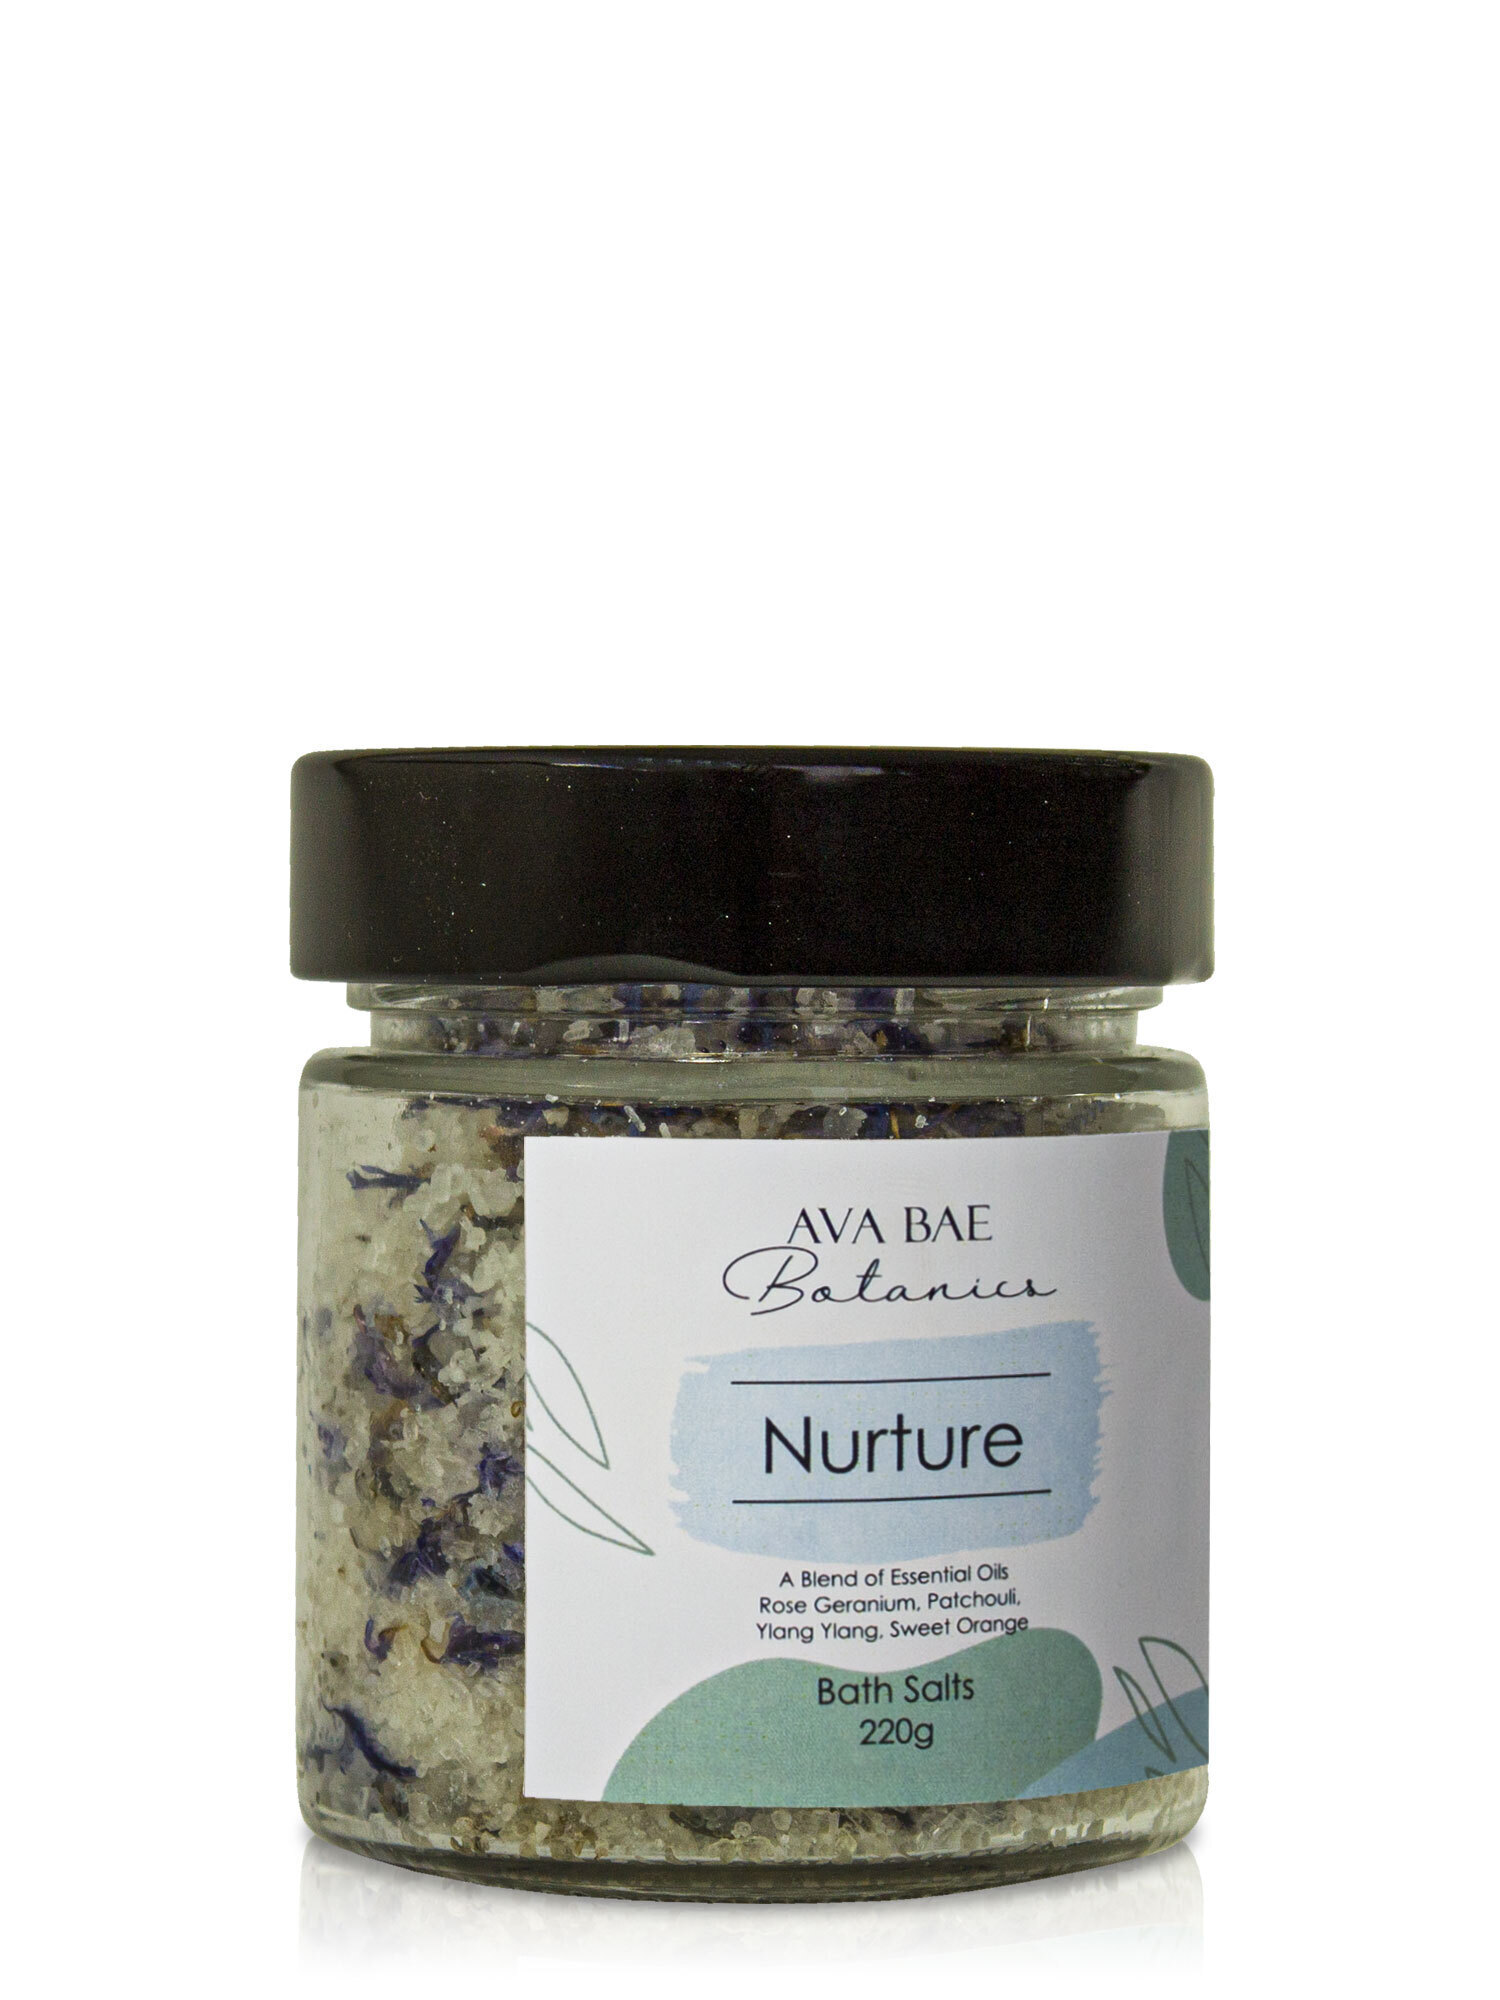 Ava Bae Botanics Bath Salts 220g - Nurture